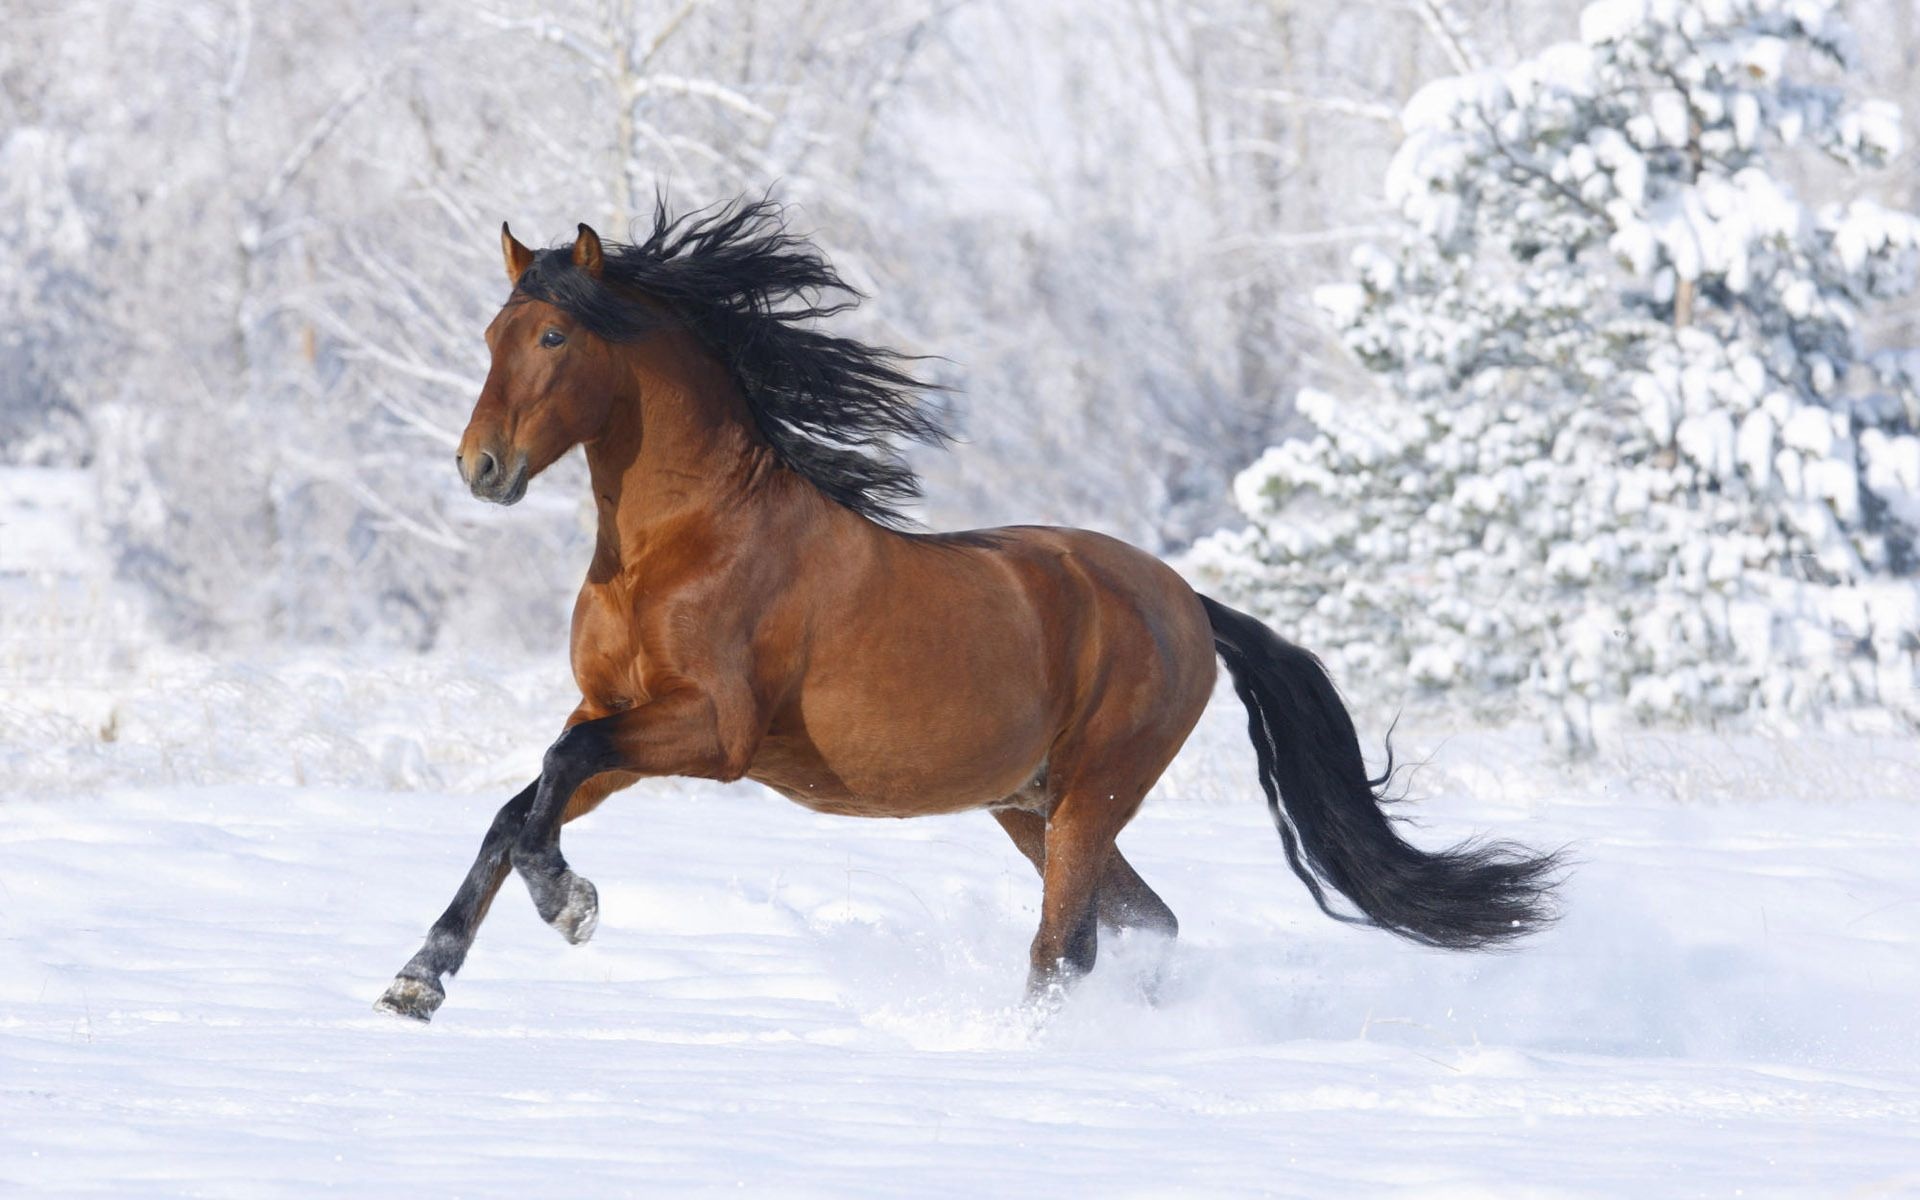 Winter horse wallpapers, Snowy equestrian scenes, Majestic beauty, Equine grace, 1920x1200 HD Desktop